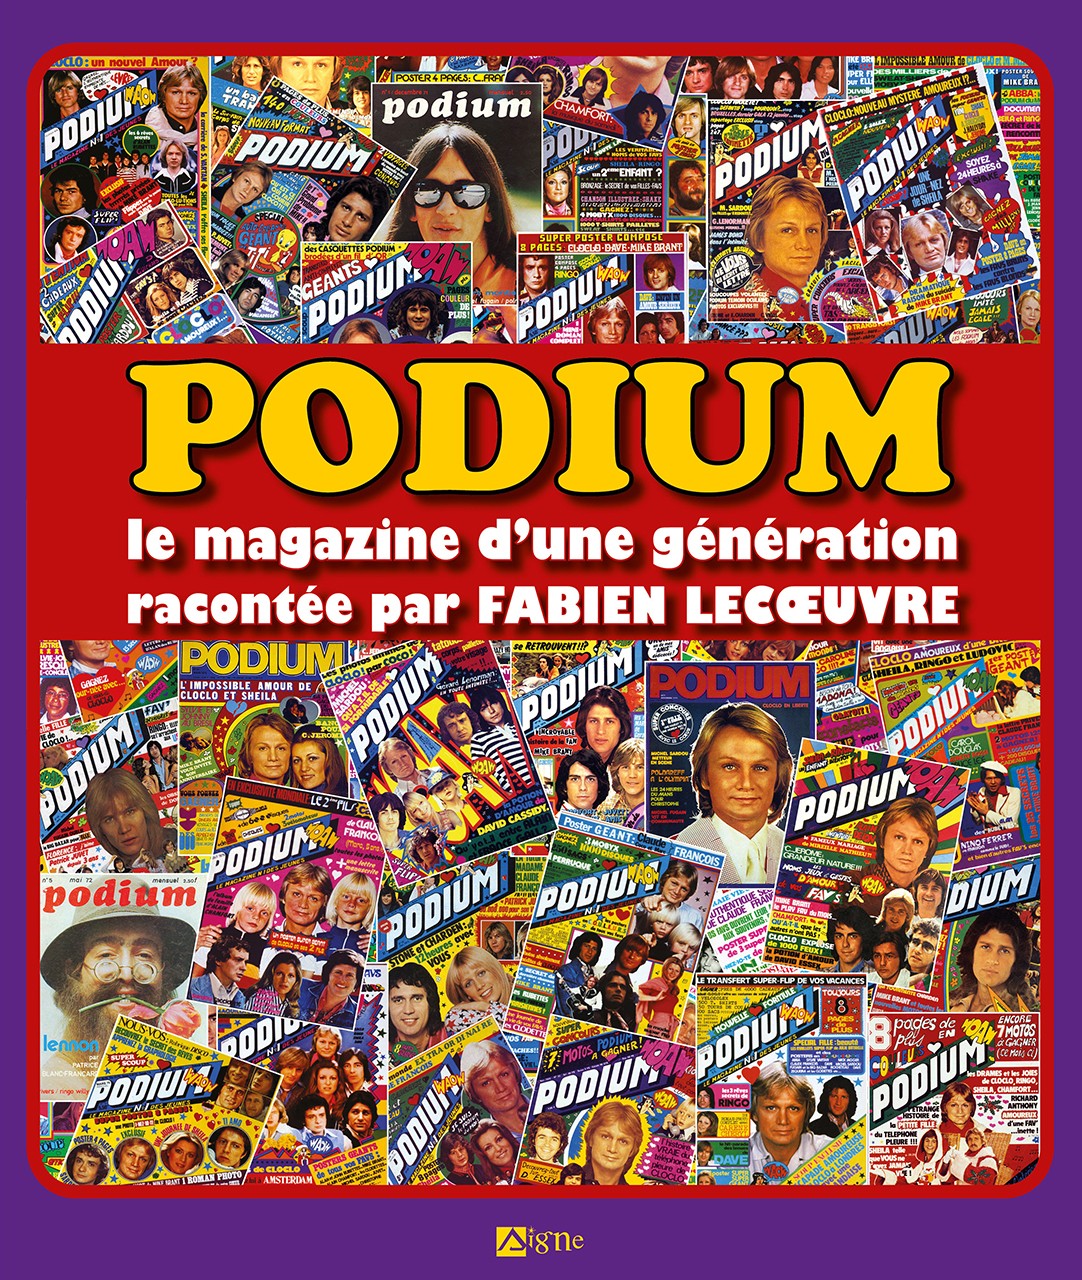 Podium Le magazine d'une génération racontée par Fabien Lecoeuvre